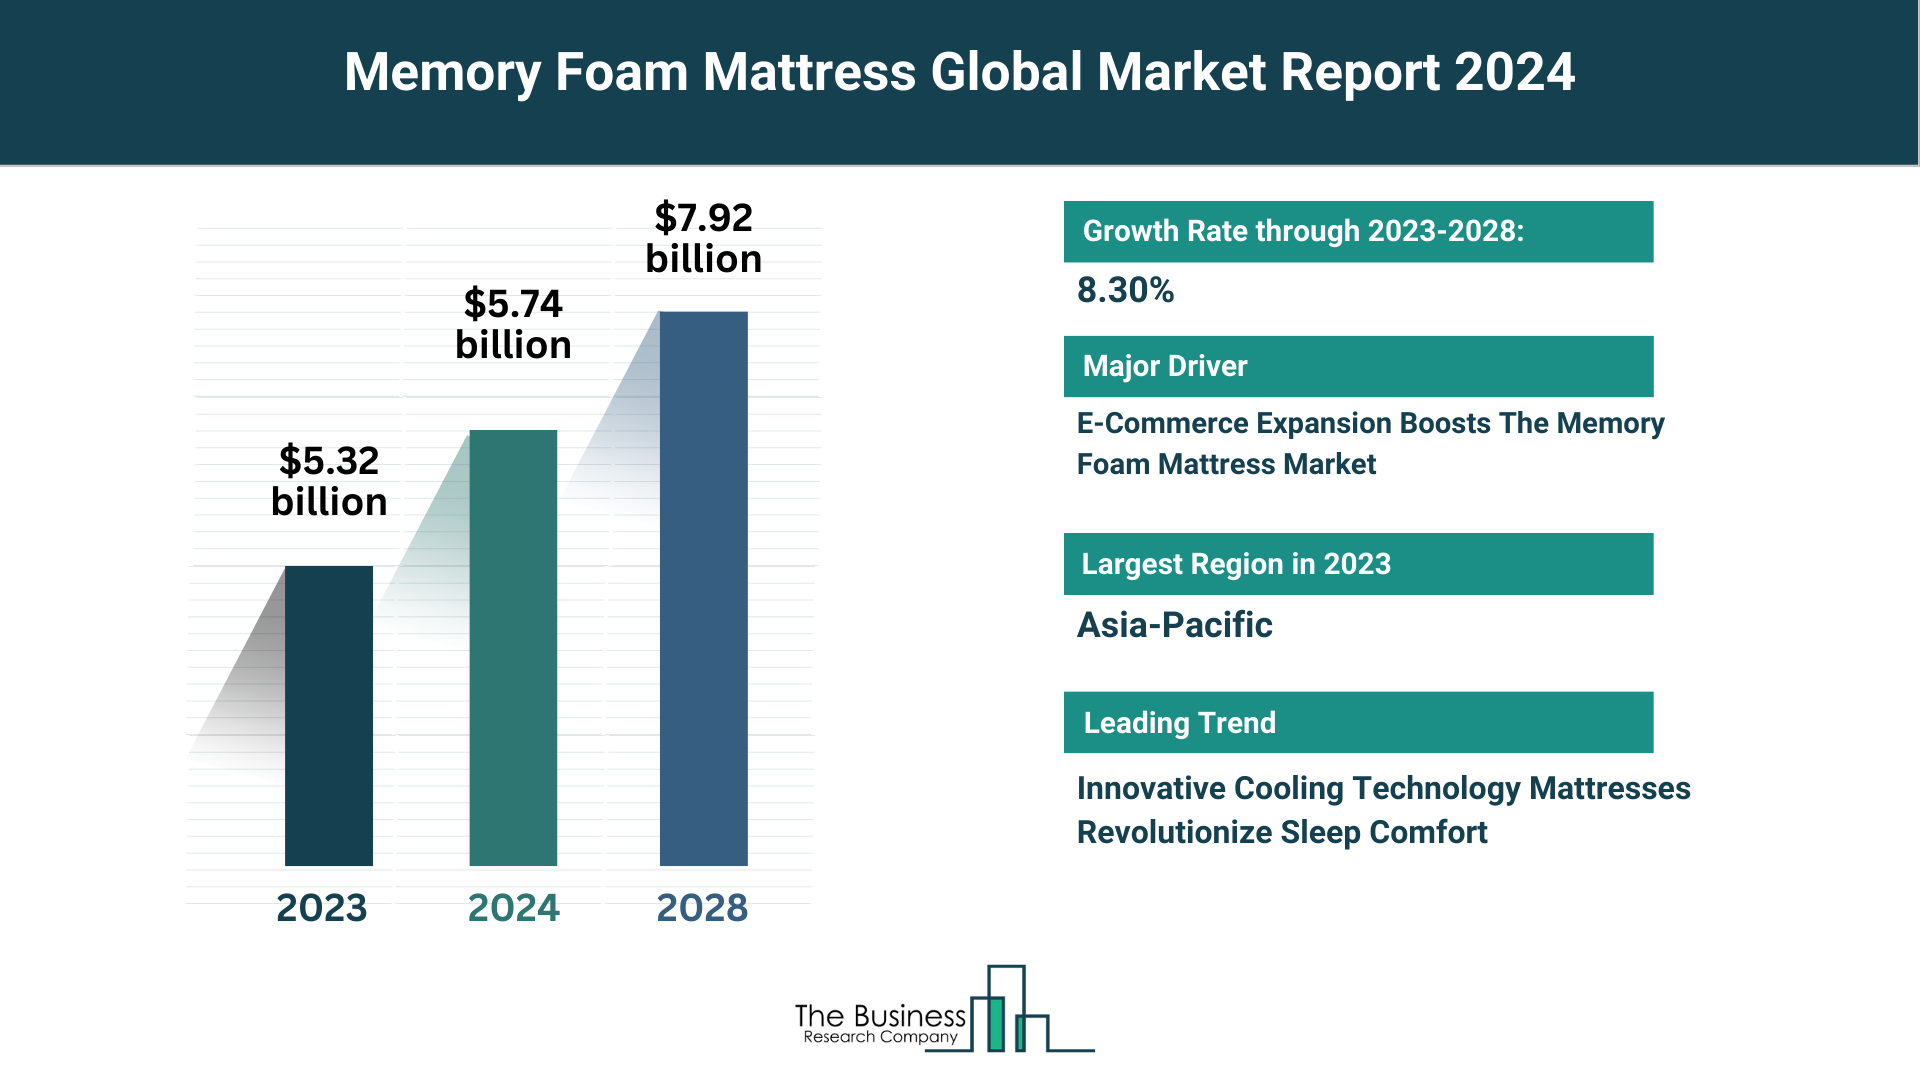 5 Key Takeaways From The Memory Foam Mattress Market Report 2024